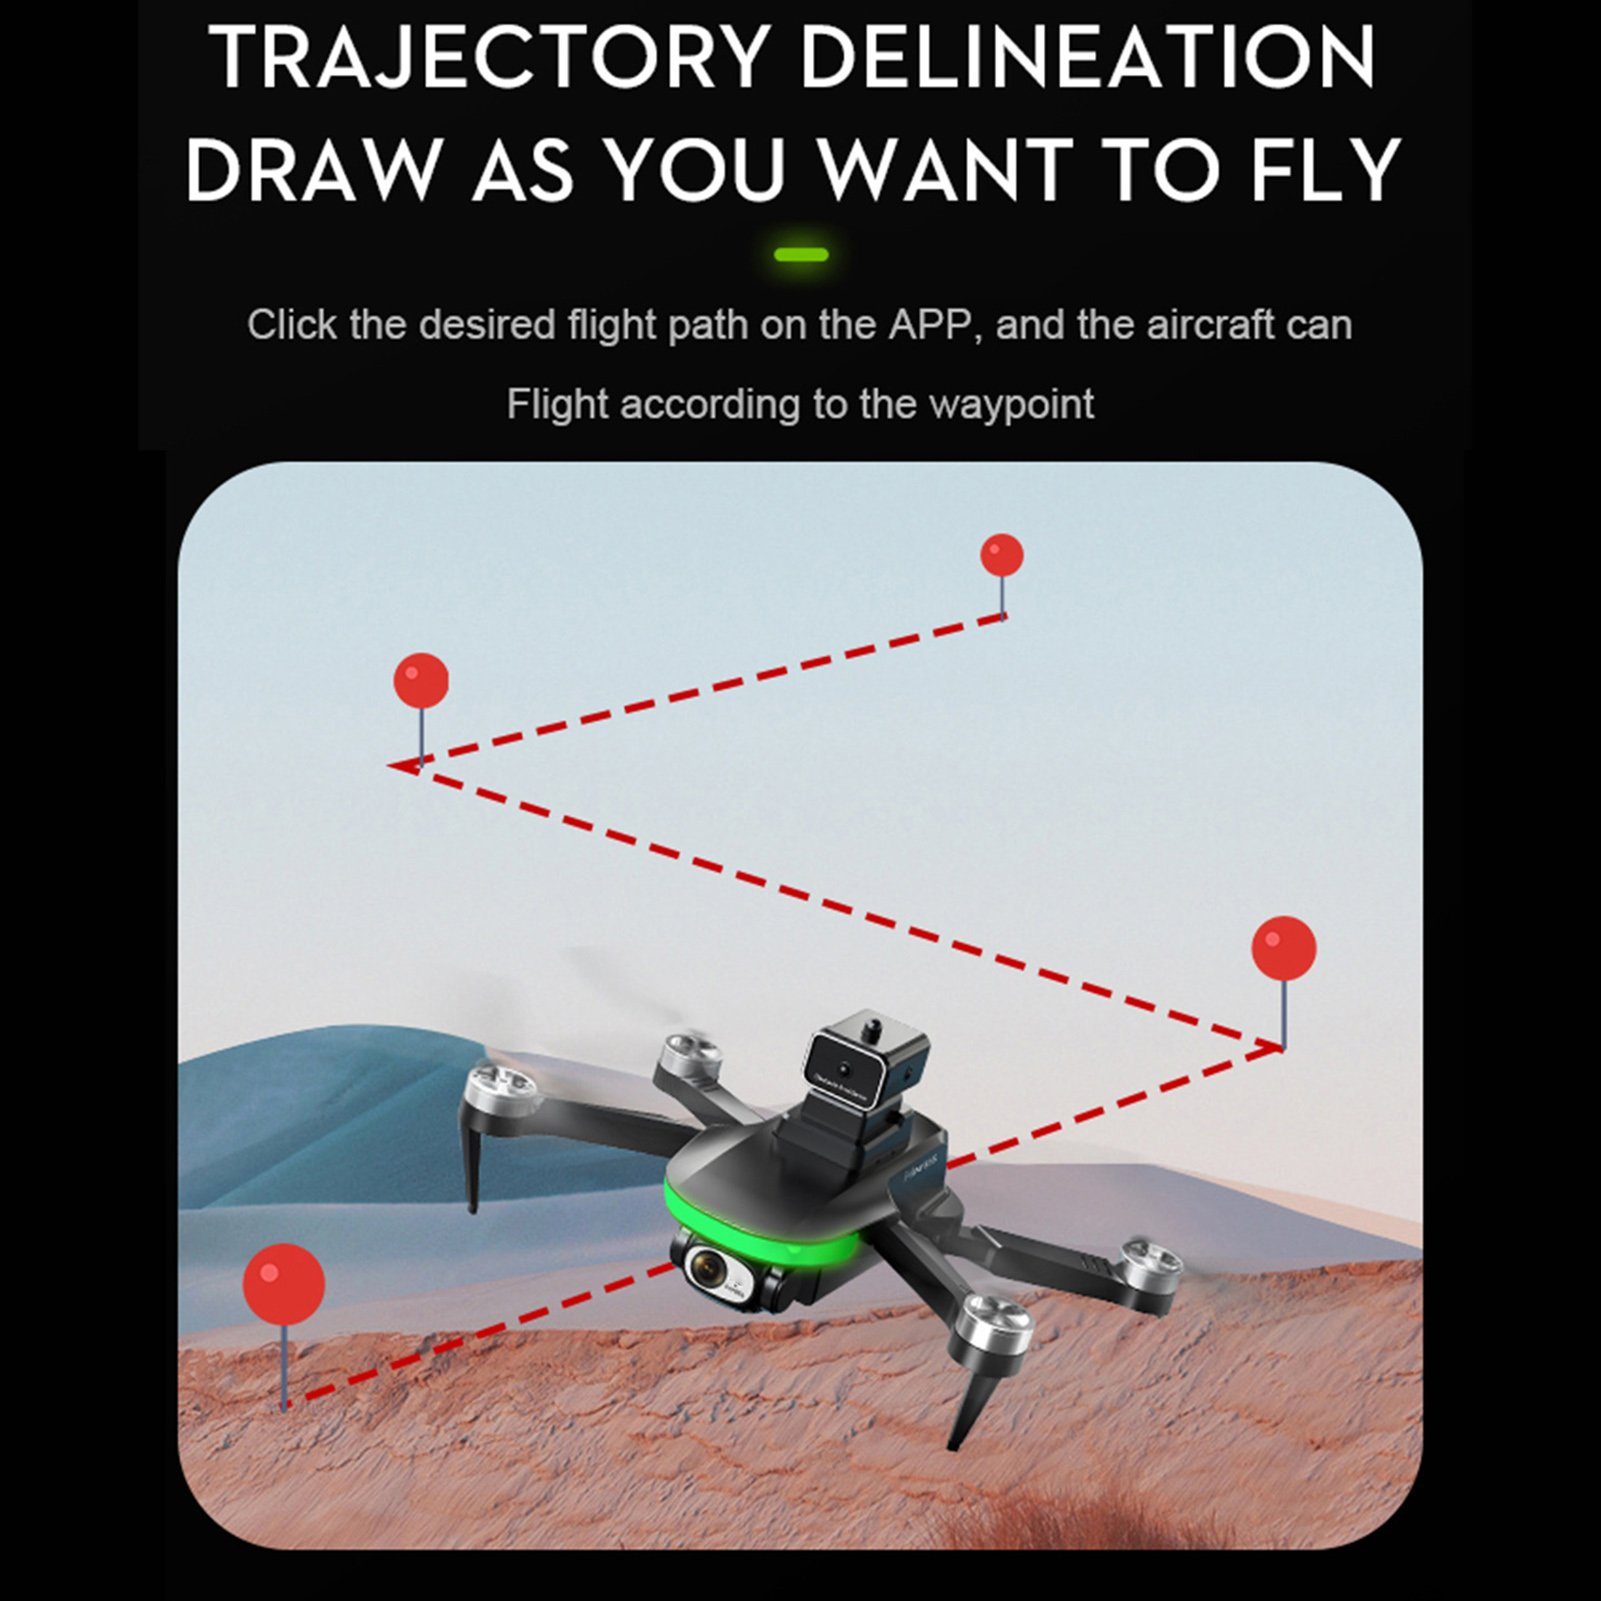 Schwarz,6K HD-kompatible 4 Anti-Jamming Erwachsene, Anfänger) Kinder Rutaqian Spielzeugflugzeug, Luftaufnahmen APP-Handysteuerung Fernbedienung Quadrocopter Drohne GHz Kanäle, Kamera Mini-Faltdrohne, und (4K/6K, Geeignet für Quadrocopter Bürstenloser ferngesteuerte 2,4